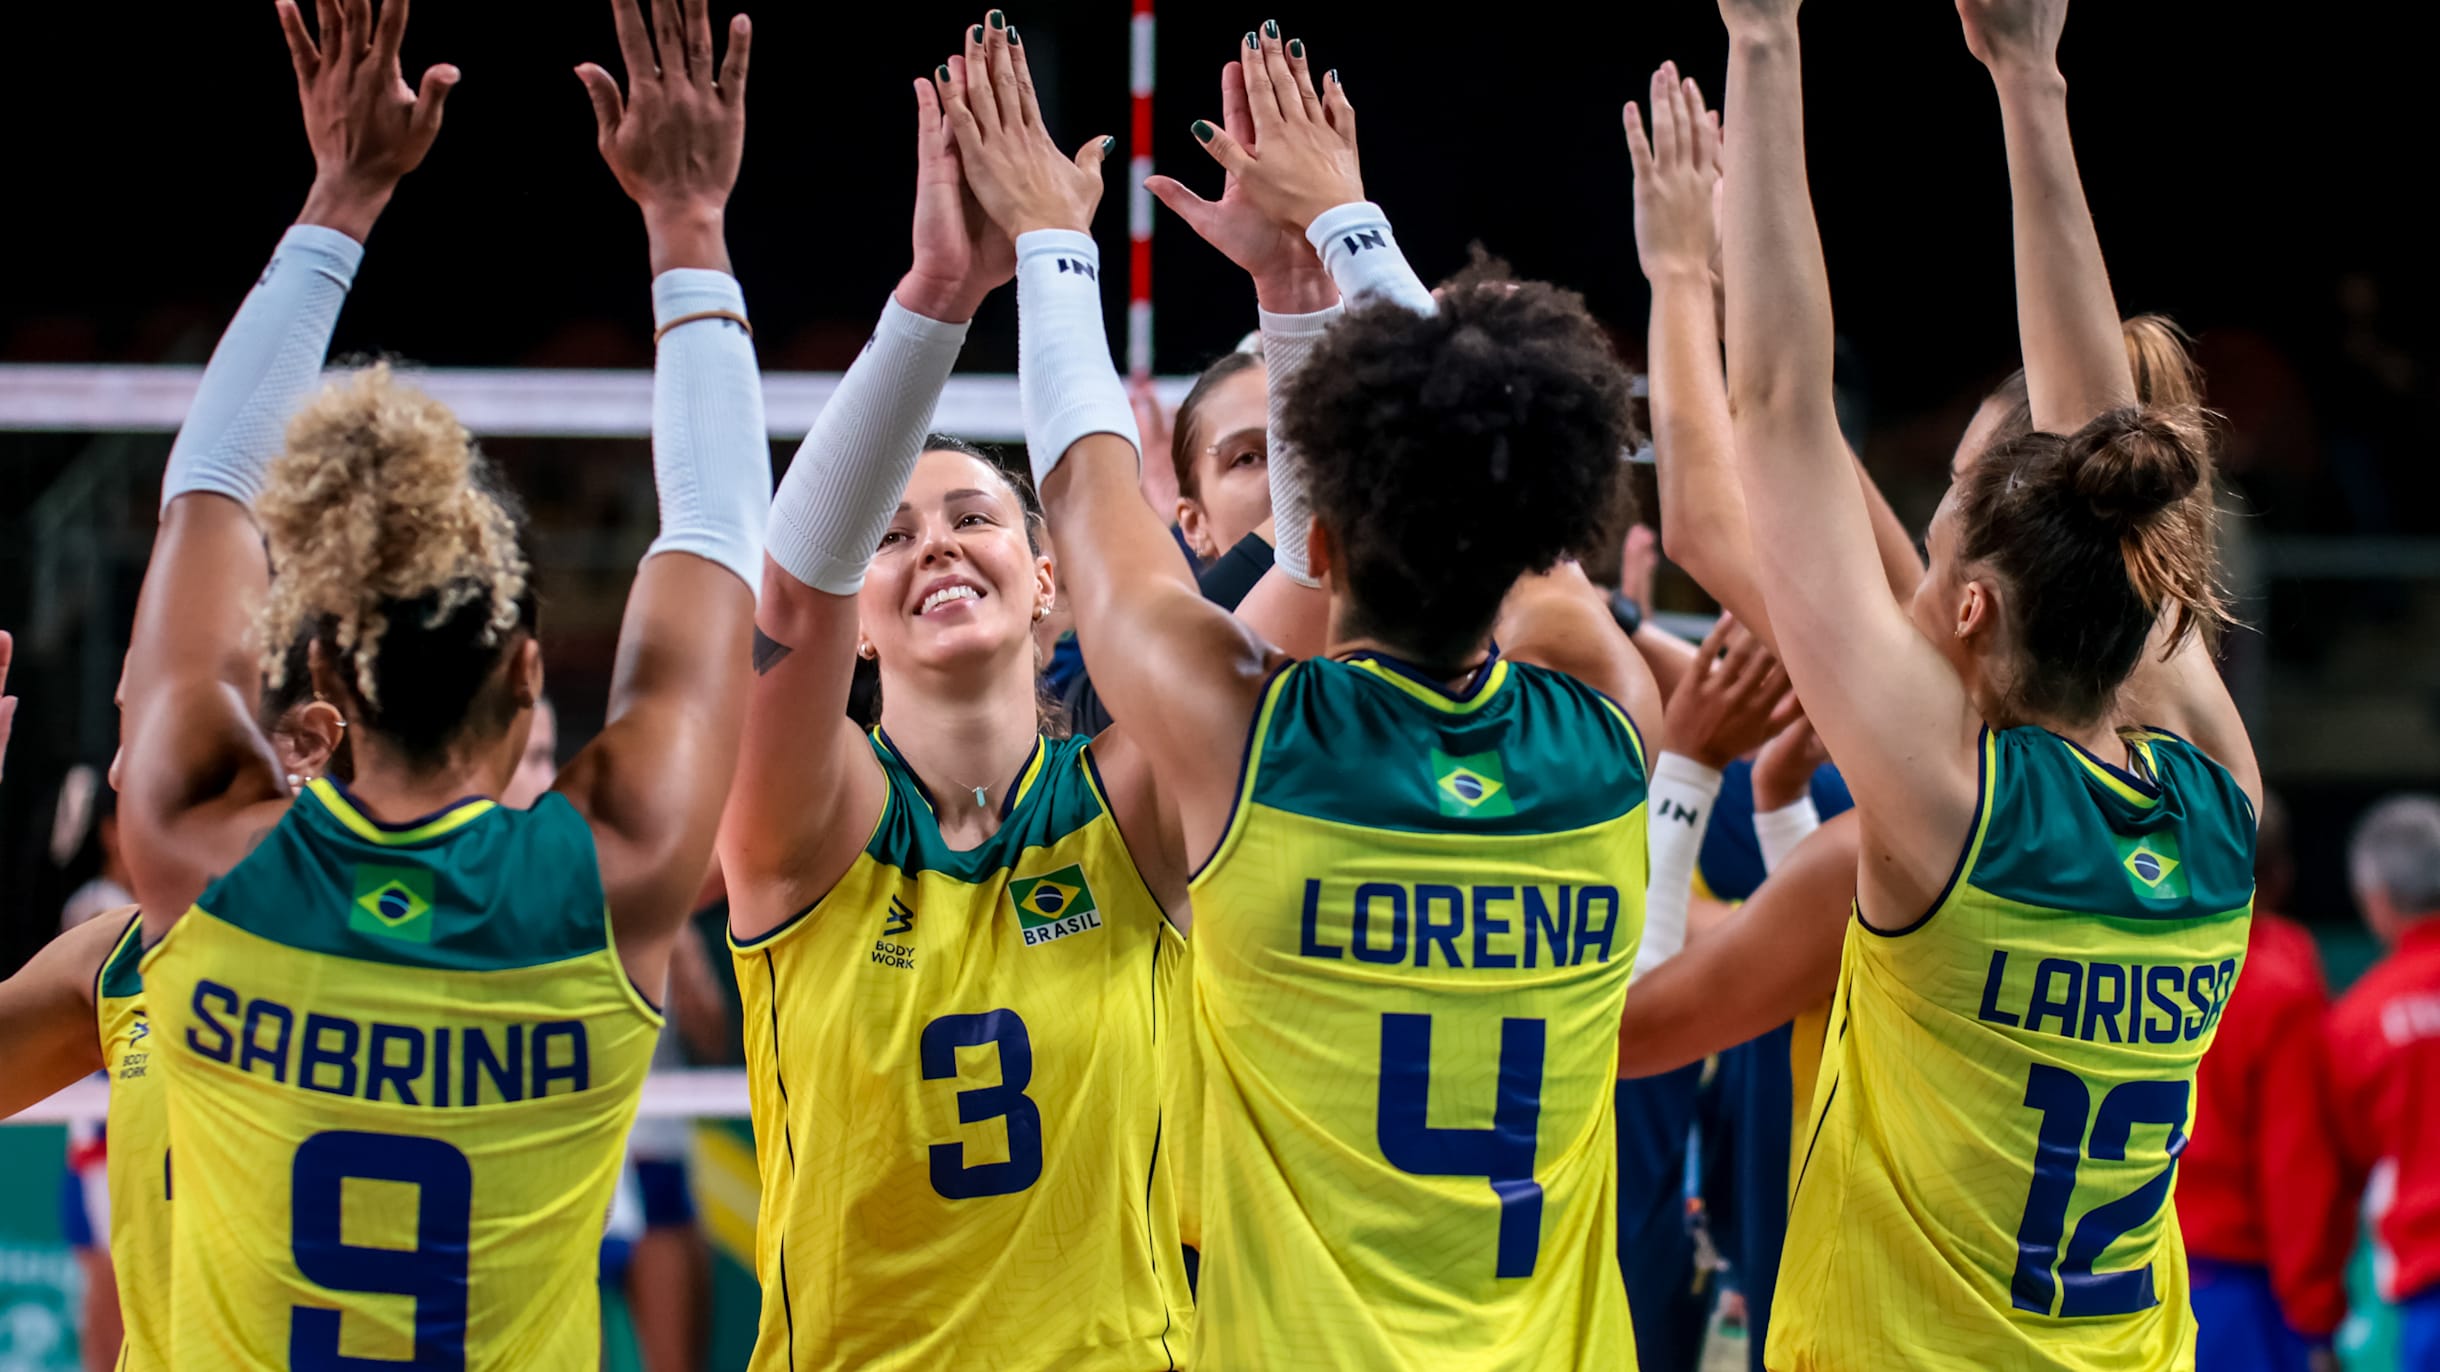 Seleção brasileira de vôlei feminino bate Porto Rico em Taiwan